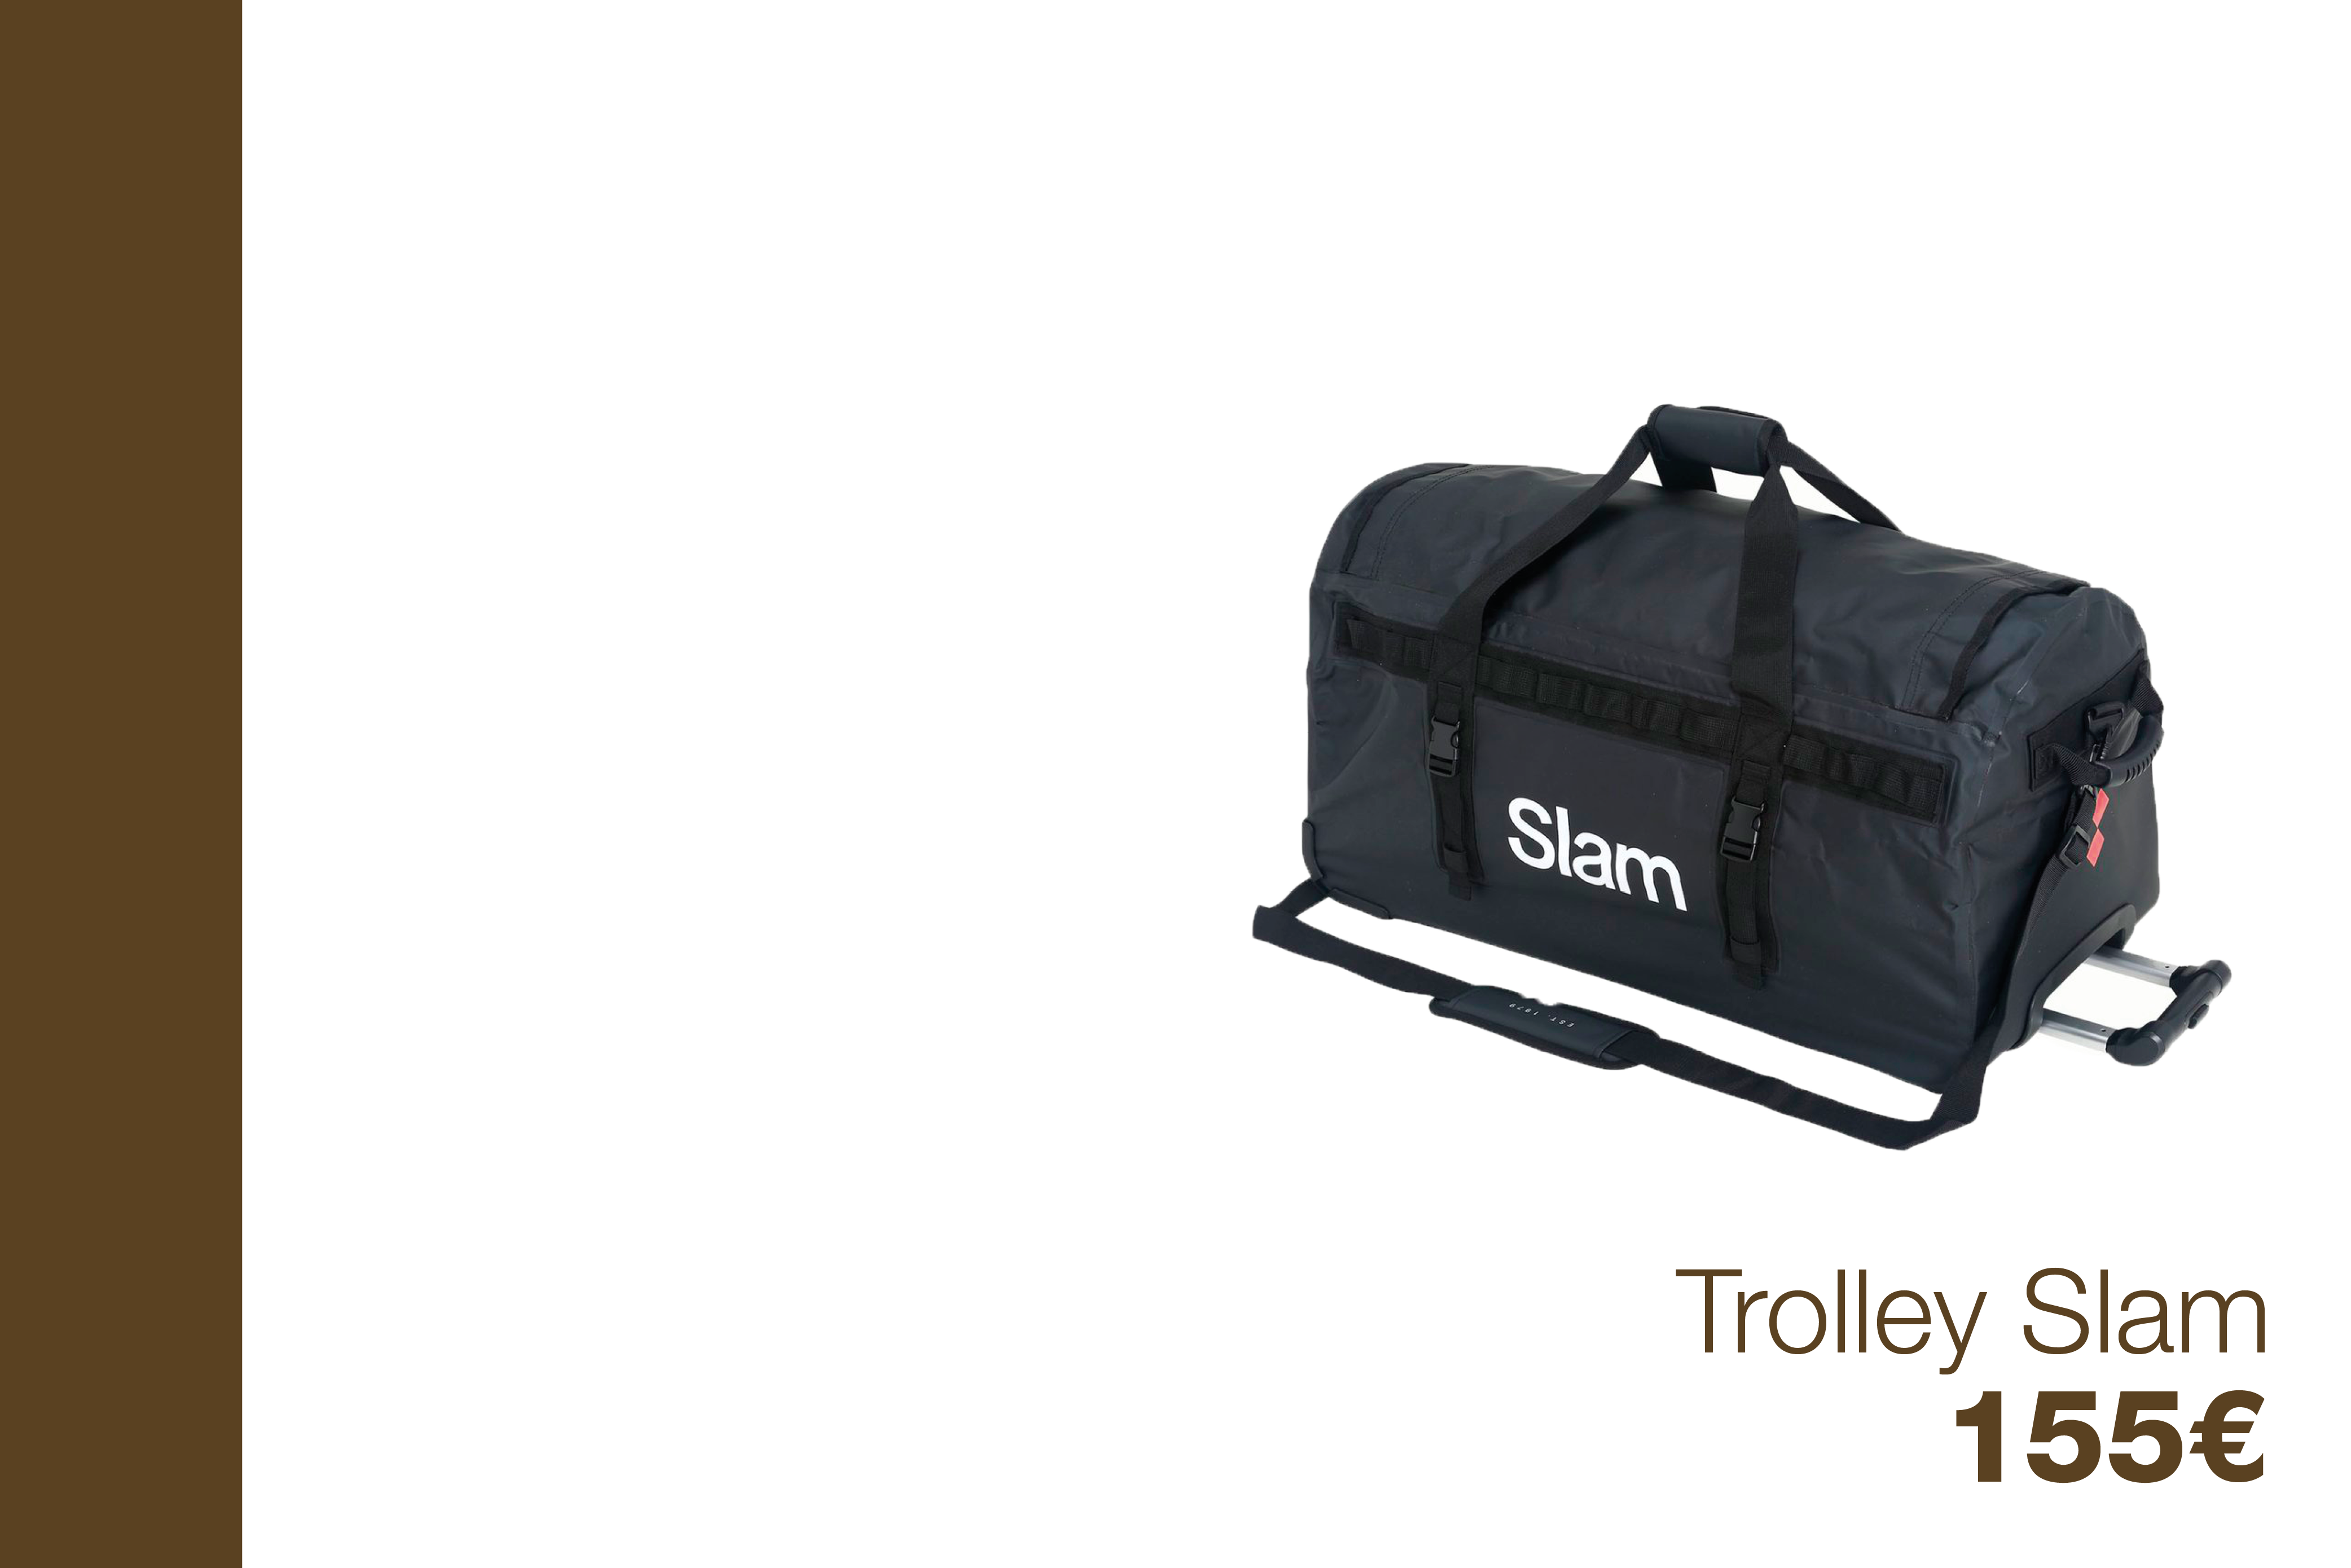 Trolley Slam - 155